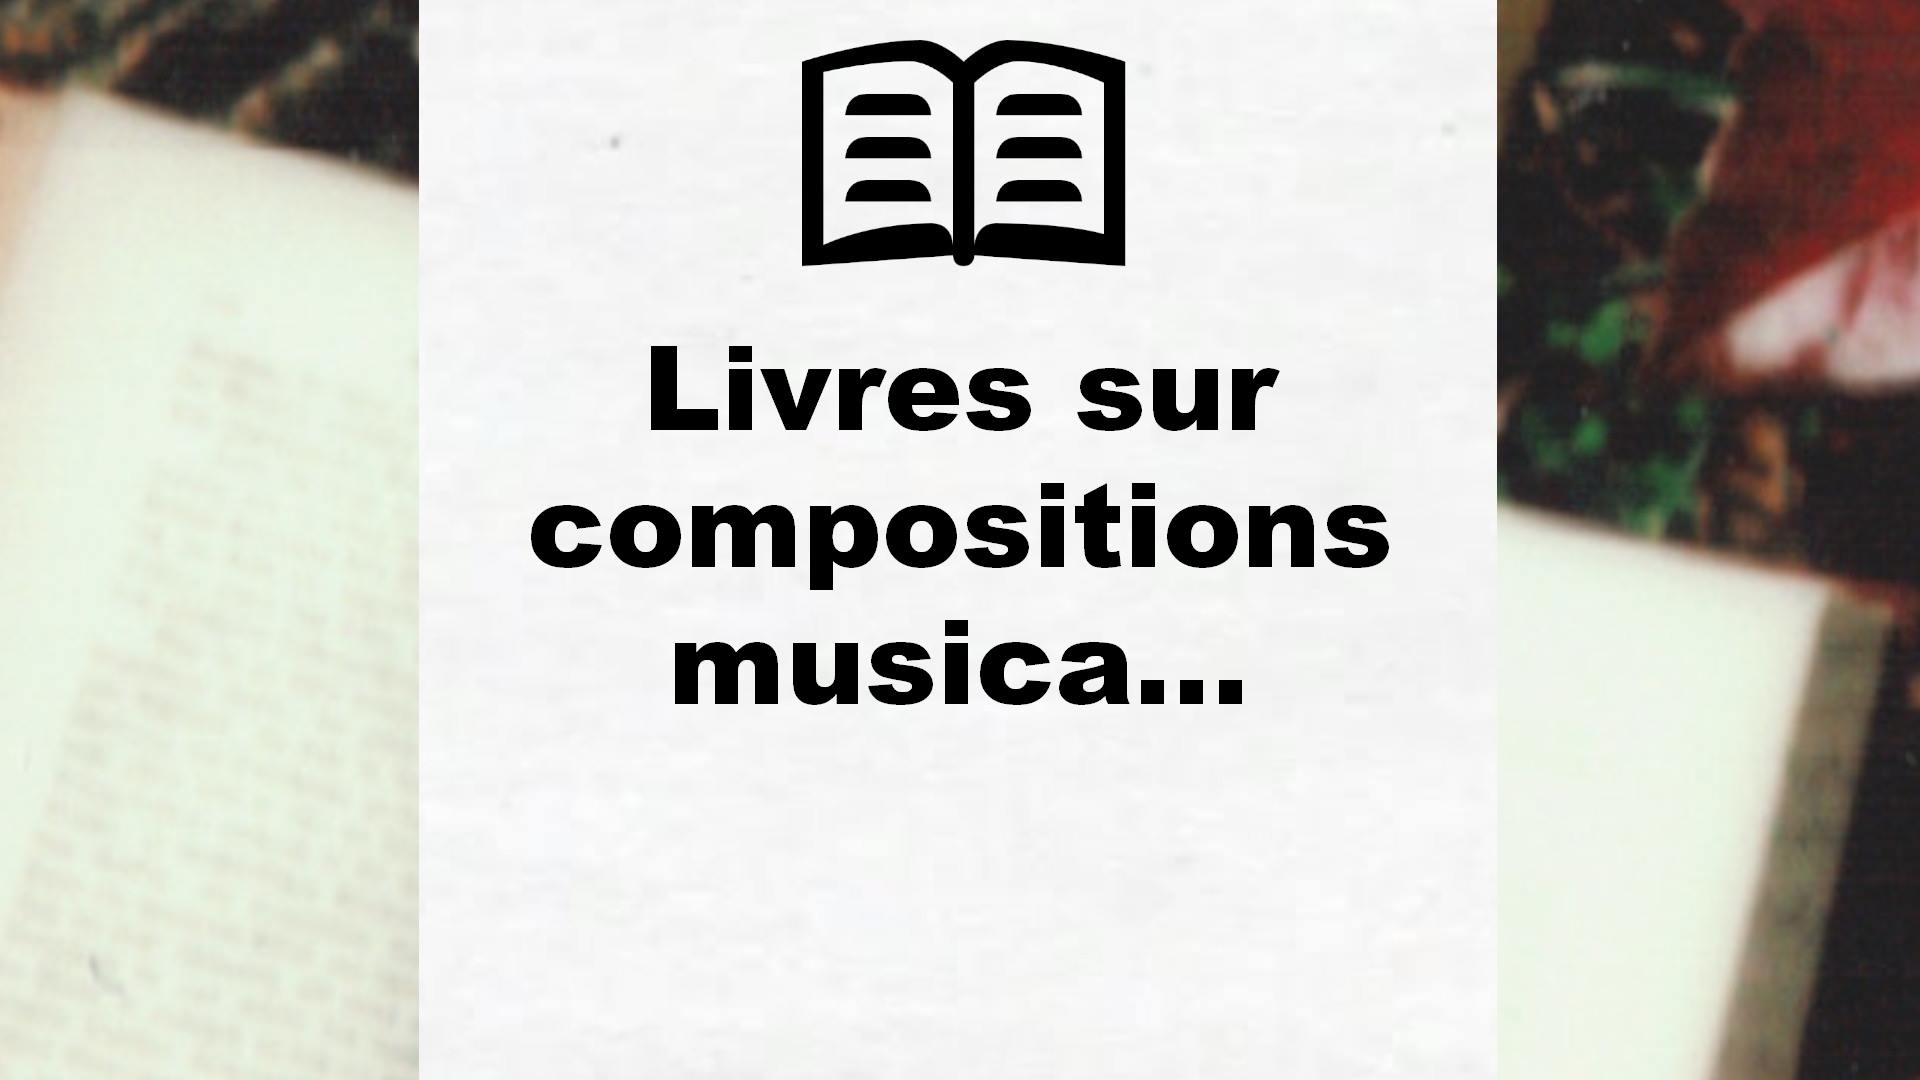 Livres sur compositions musicales